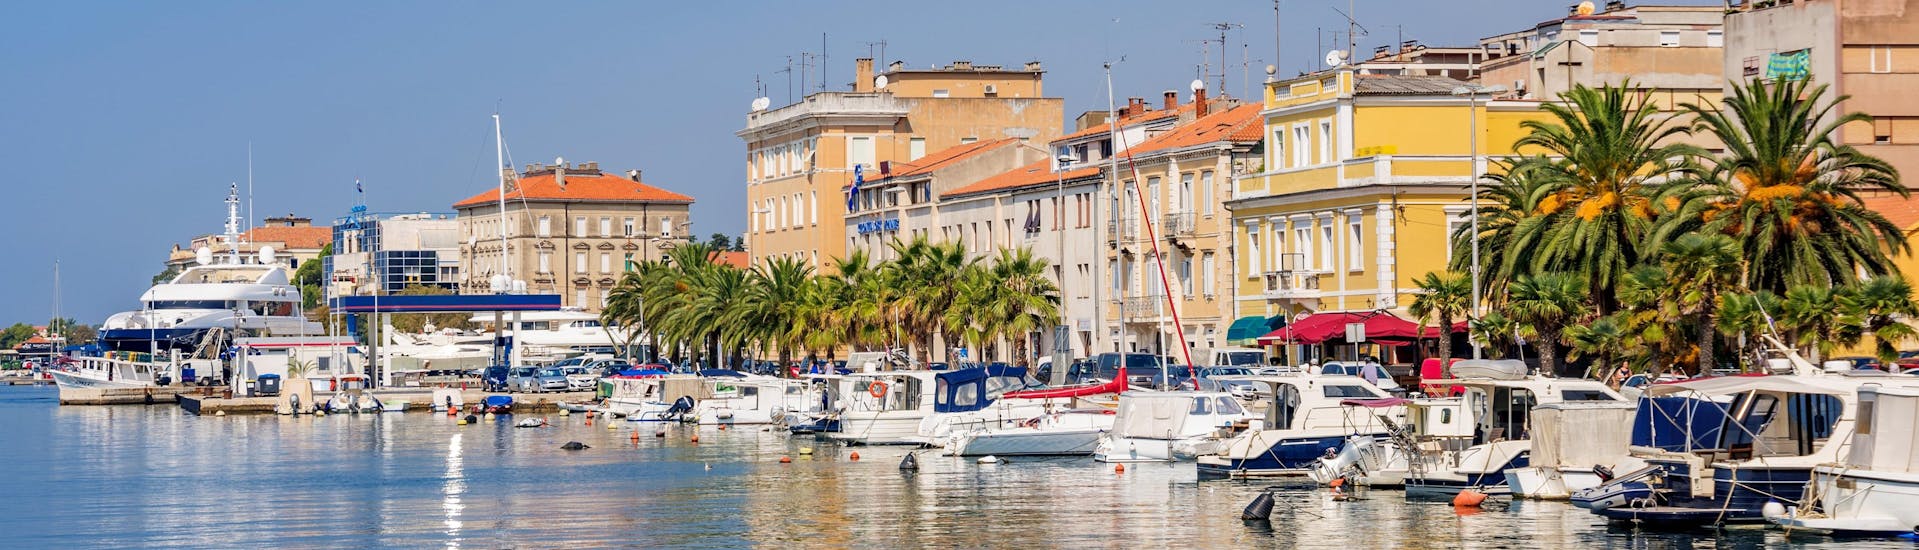 Der Hafen der Stadt Zadar, wo viel Bootstouren in der Region Zadar beginnen.